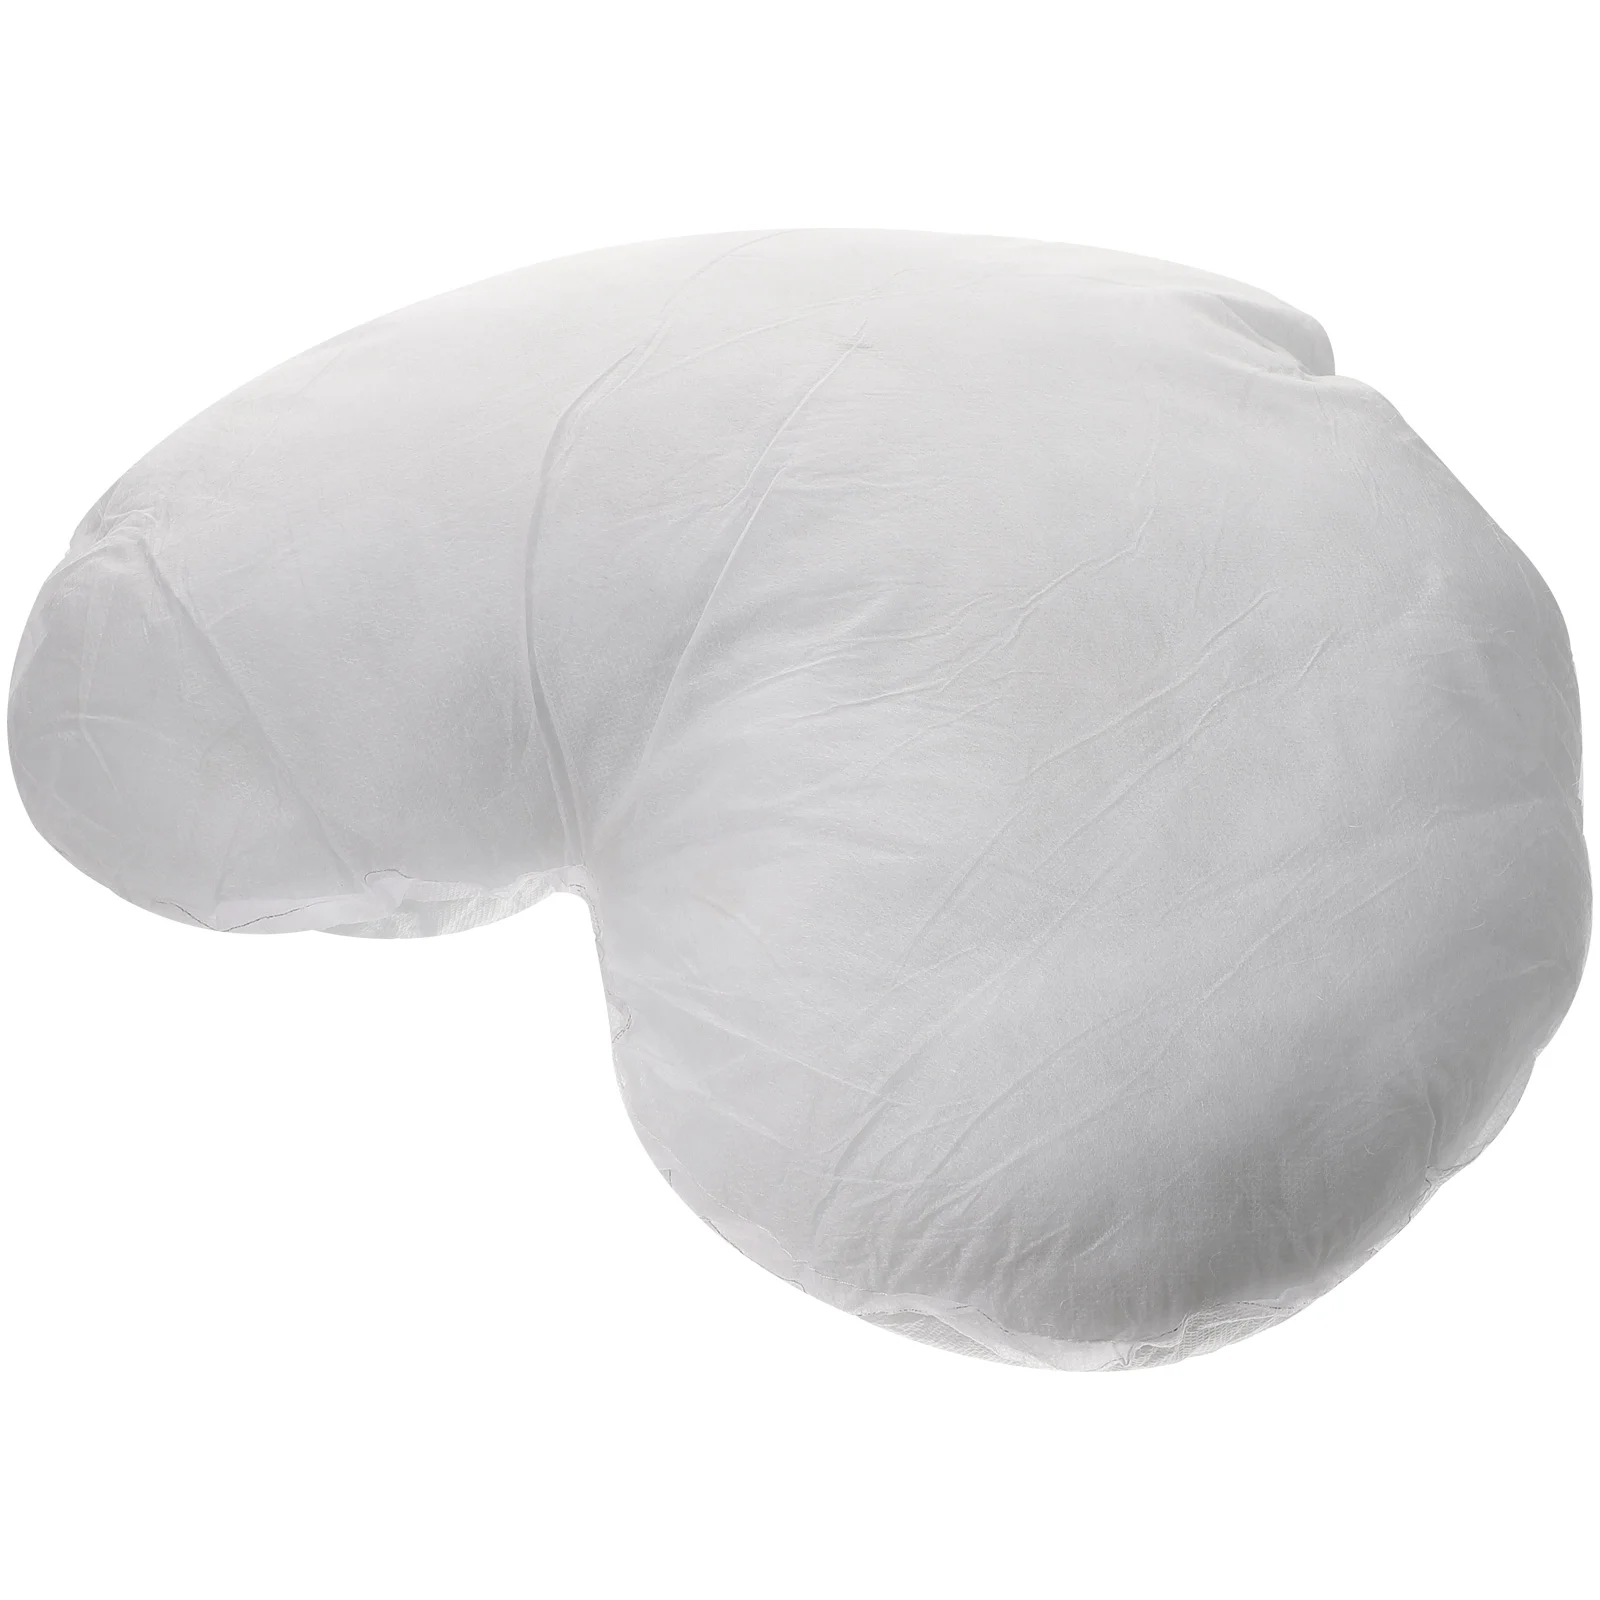 

Peach Heart Pillow Home Pillowcase Stuffe Throw Inserts Pillows Couch Headrest Decorative Cushion Filler Inner Polyester Chair